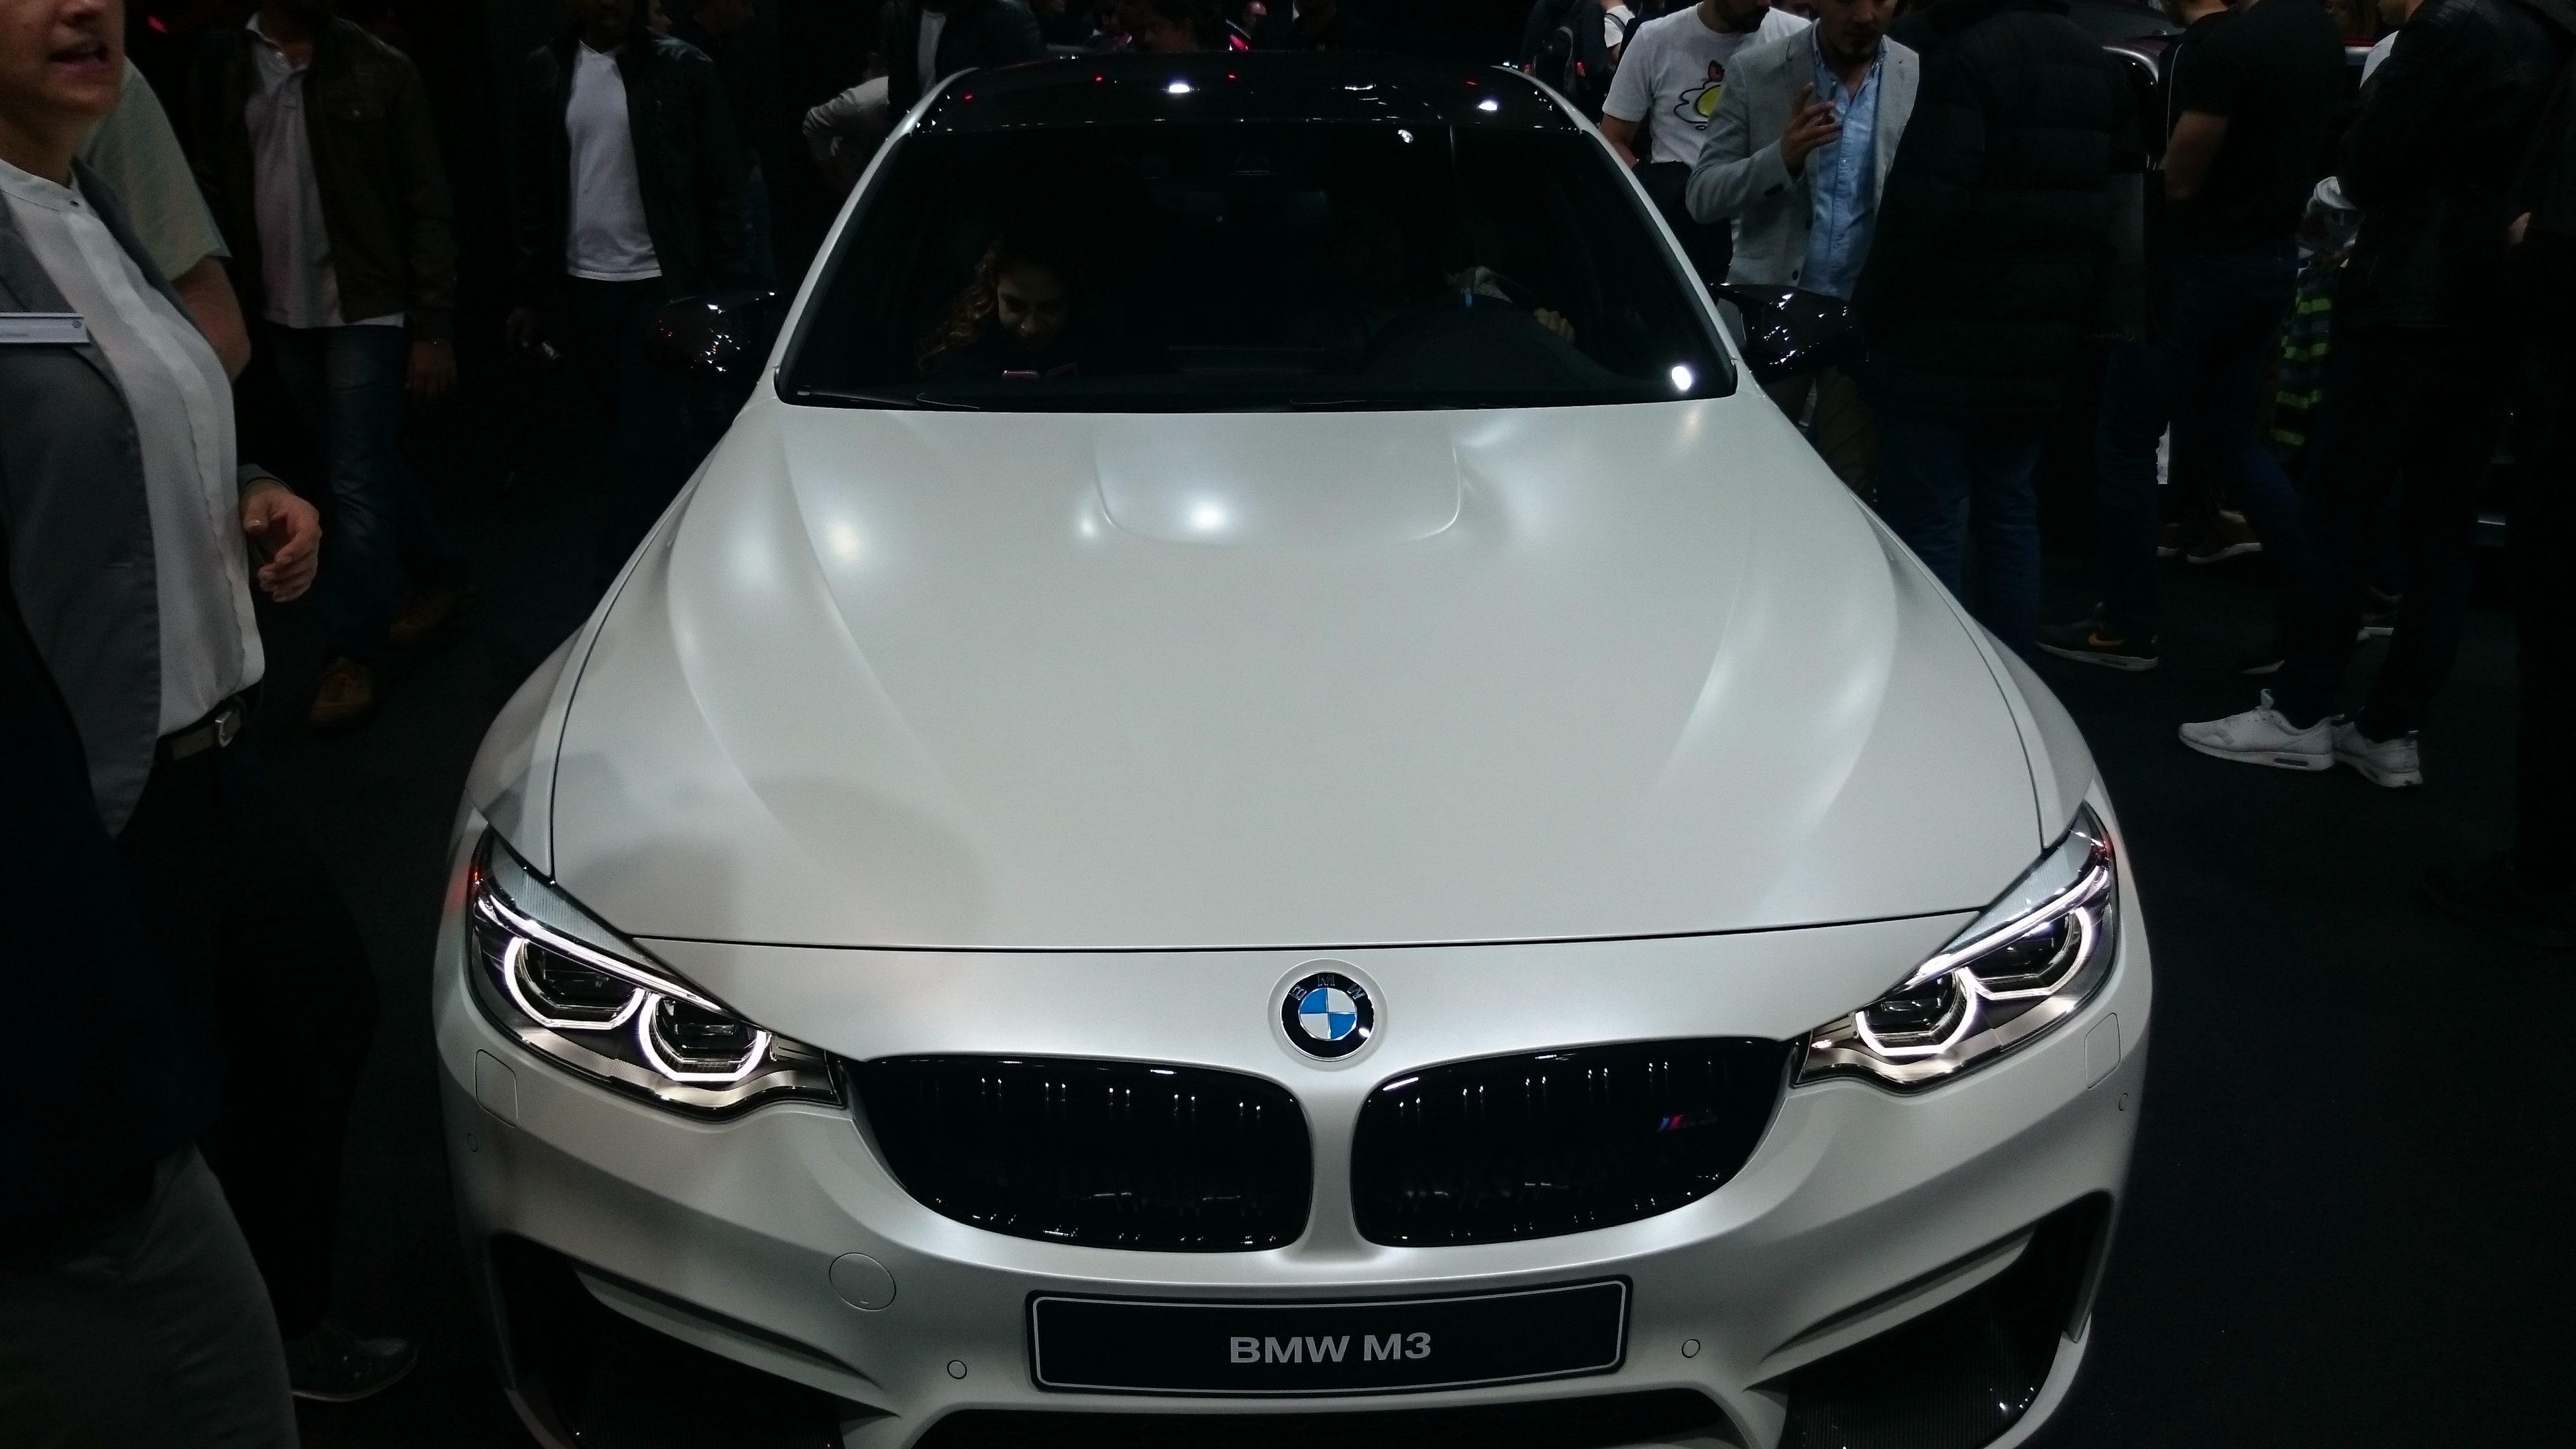 Fotos 360 del BMW M3 #VidePan en #IAA2015